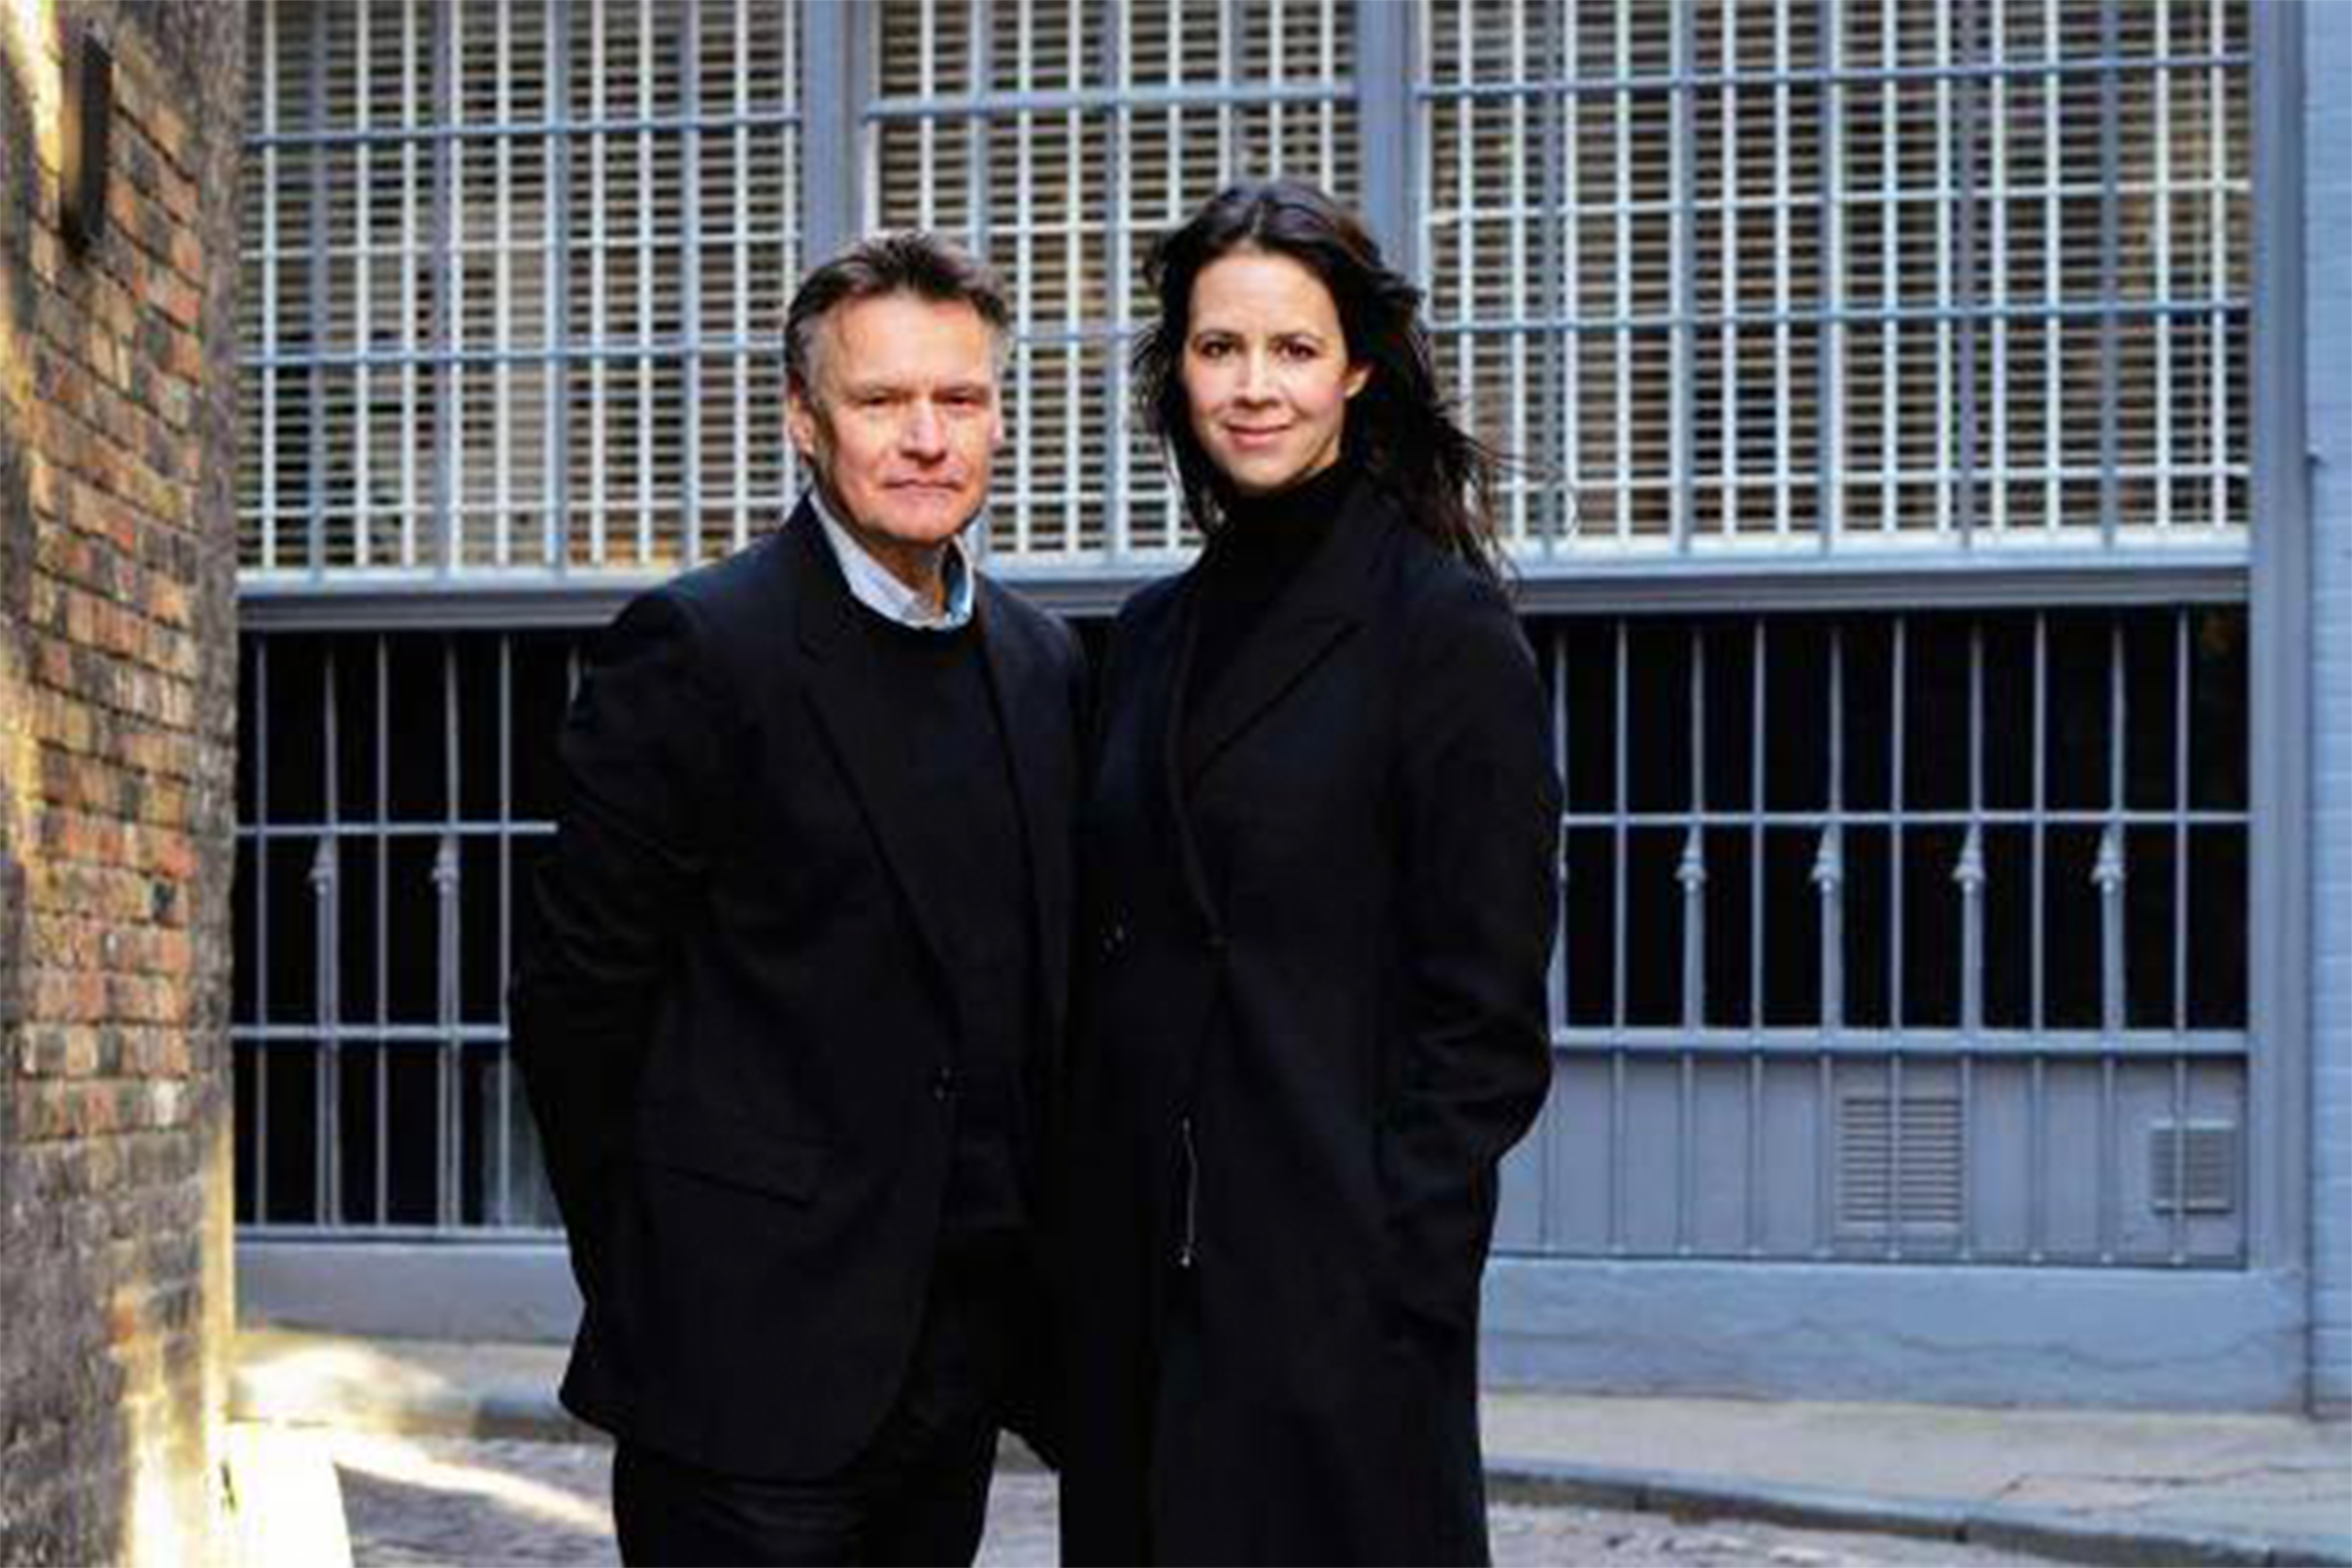 Linda Thielová a Geoff Denton z londýnskeho architektonického štúdia White Arkitekter.